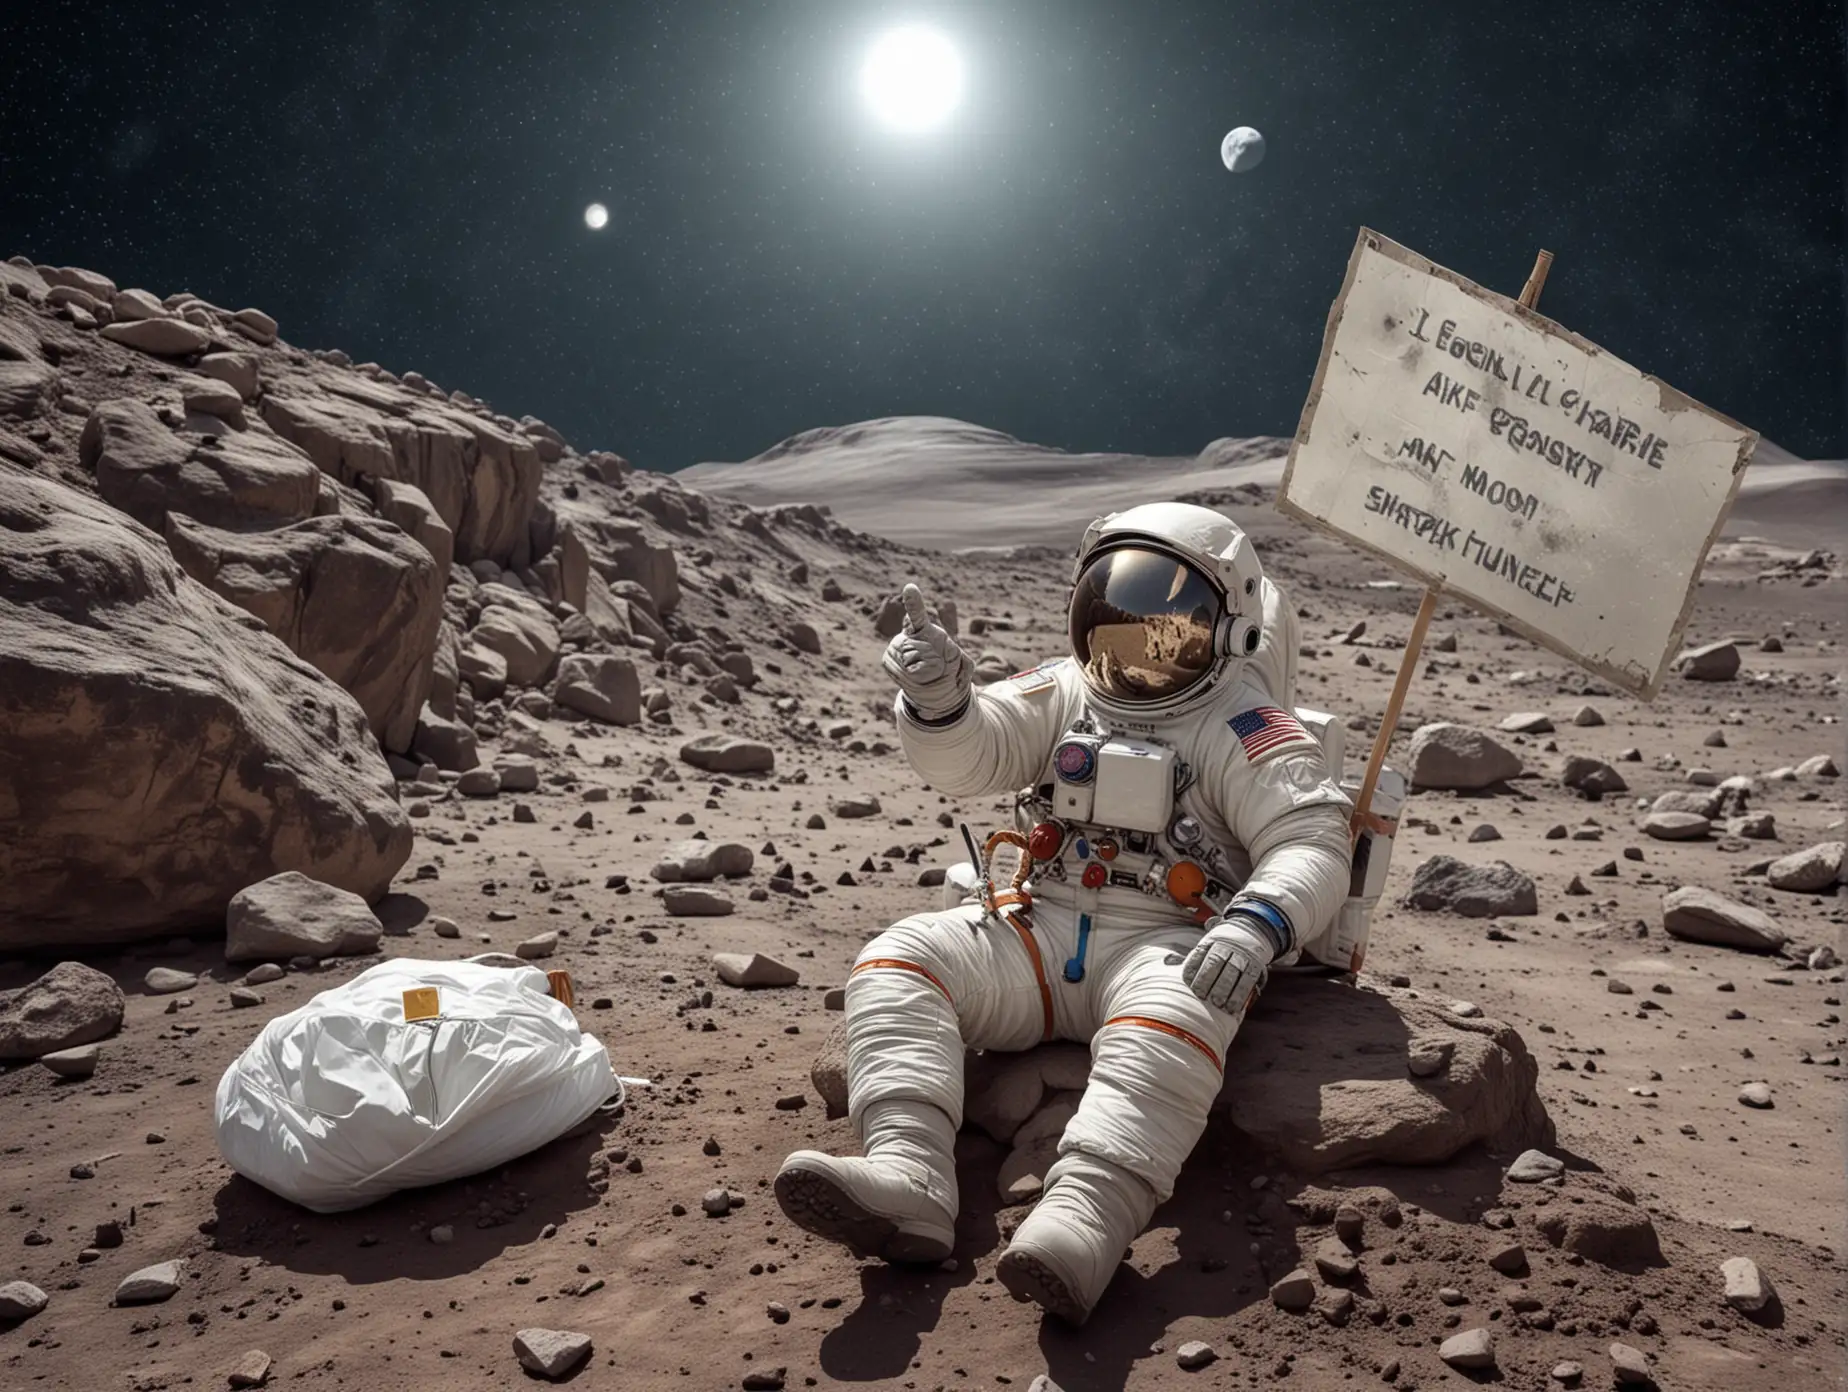 un cosmonaute, en combinaison, est assis sur un rocher sur le sol lunaire, à côté de lui, contre le rocher, un sac à dos avec sac de couchage roulé. L'astronaute lève le pouce pour faire de l'auto-stop, il tient une pancarte sur laquelle est écrit TO THE MOON,  dans l'espace non loin de lui, on voit la terre,  dans la verrière fumée de son casque, on voit les étoiles, comète, photographie, réaliste